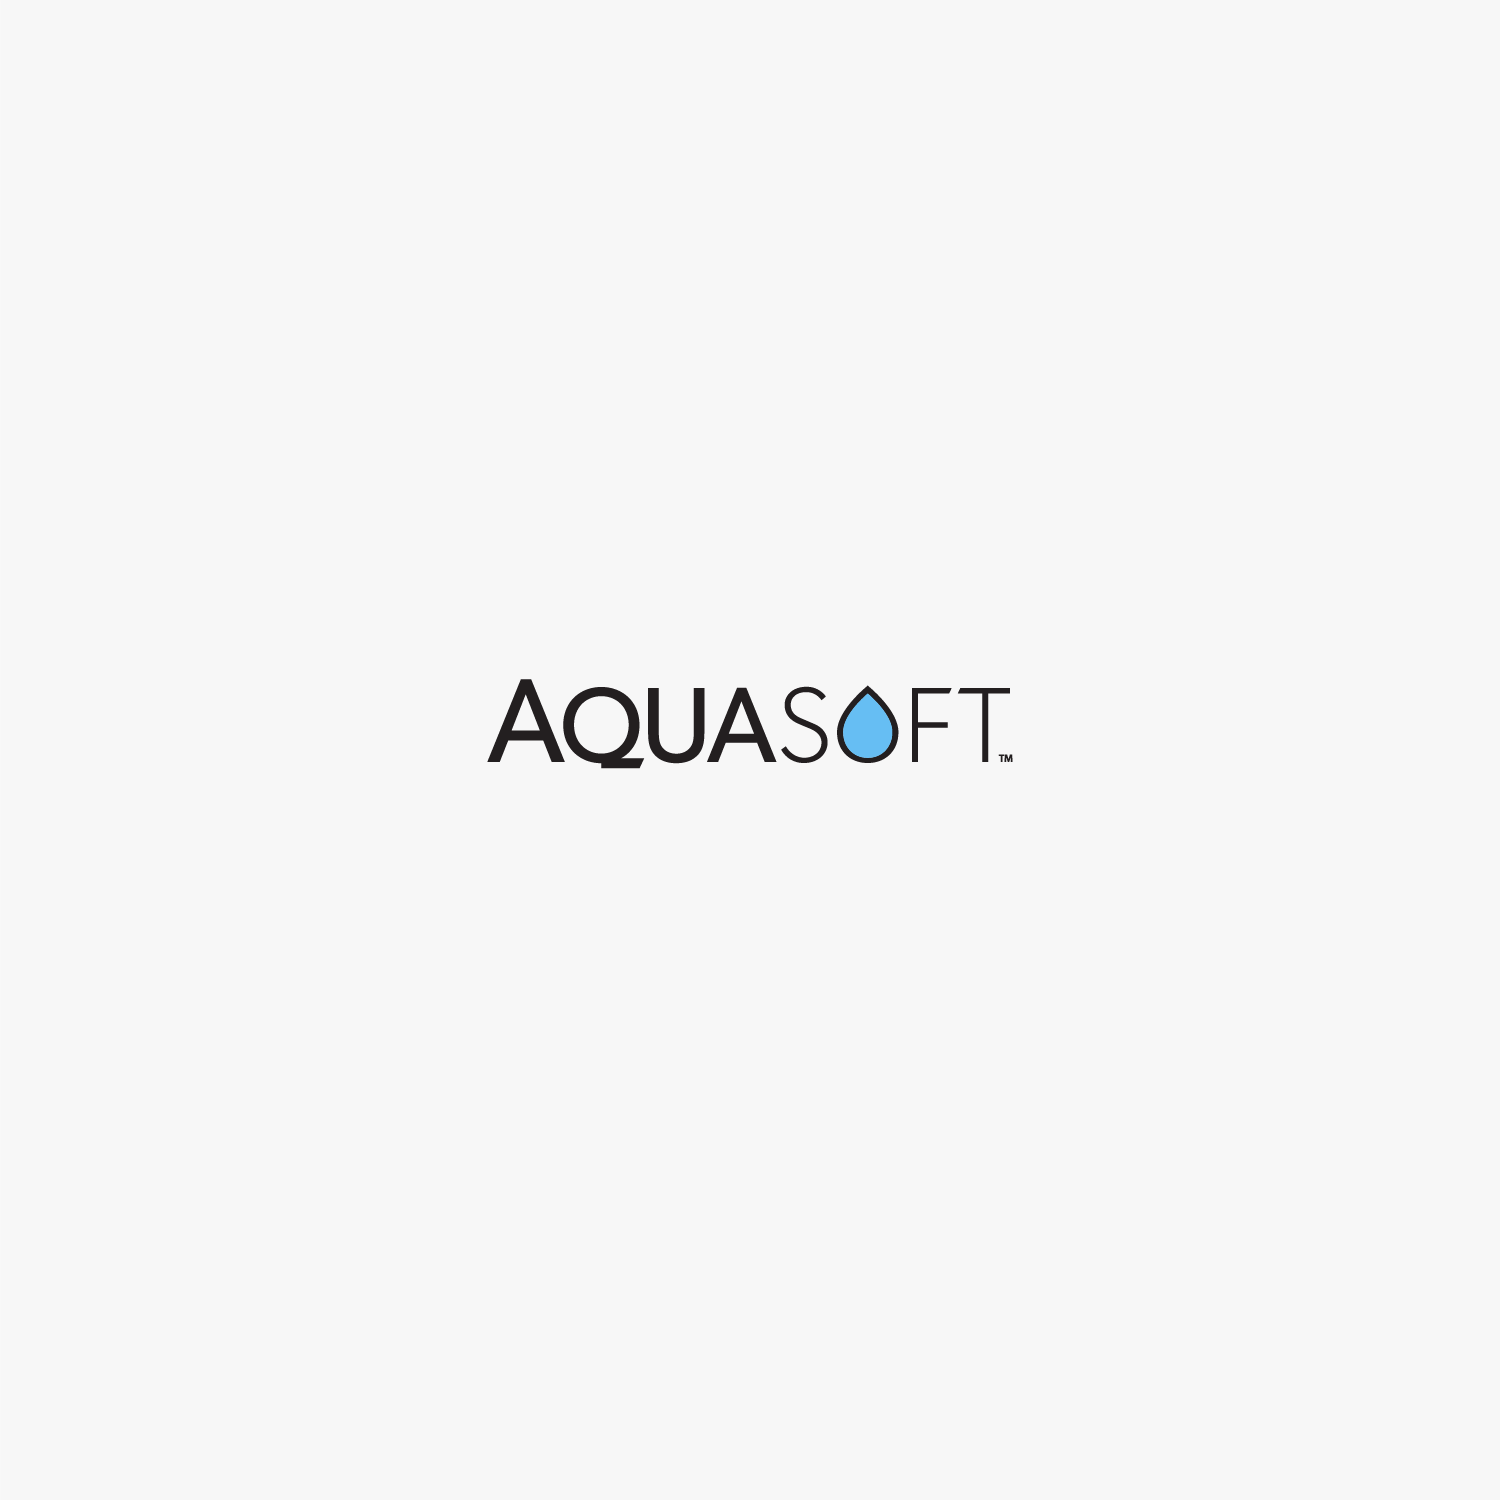 AquaSoft contact lenses